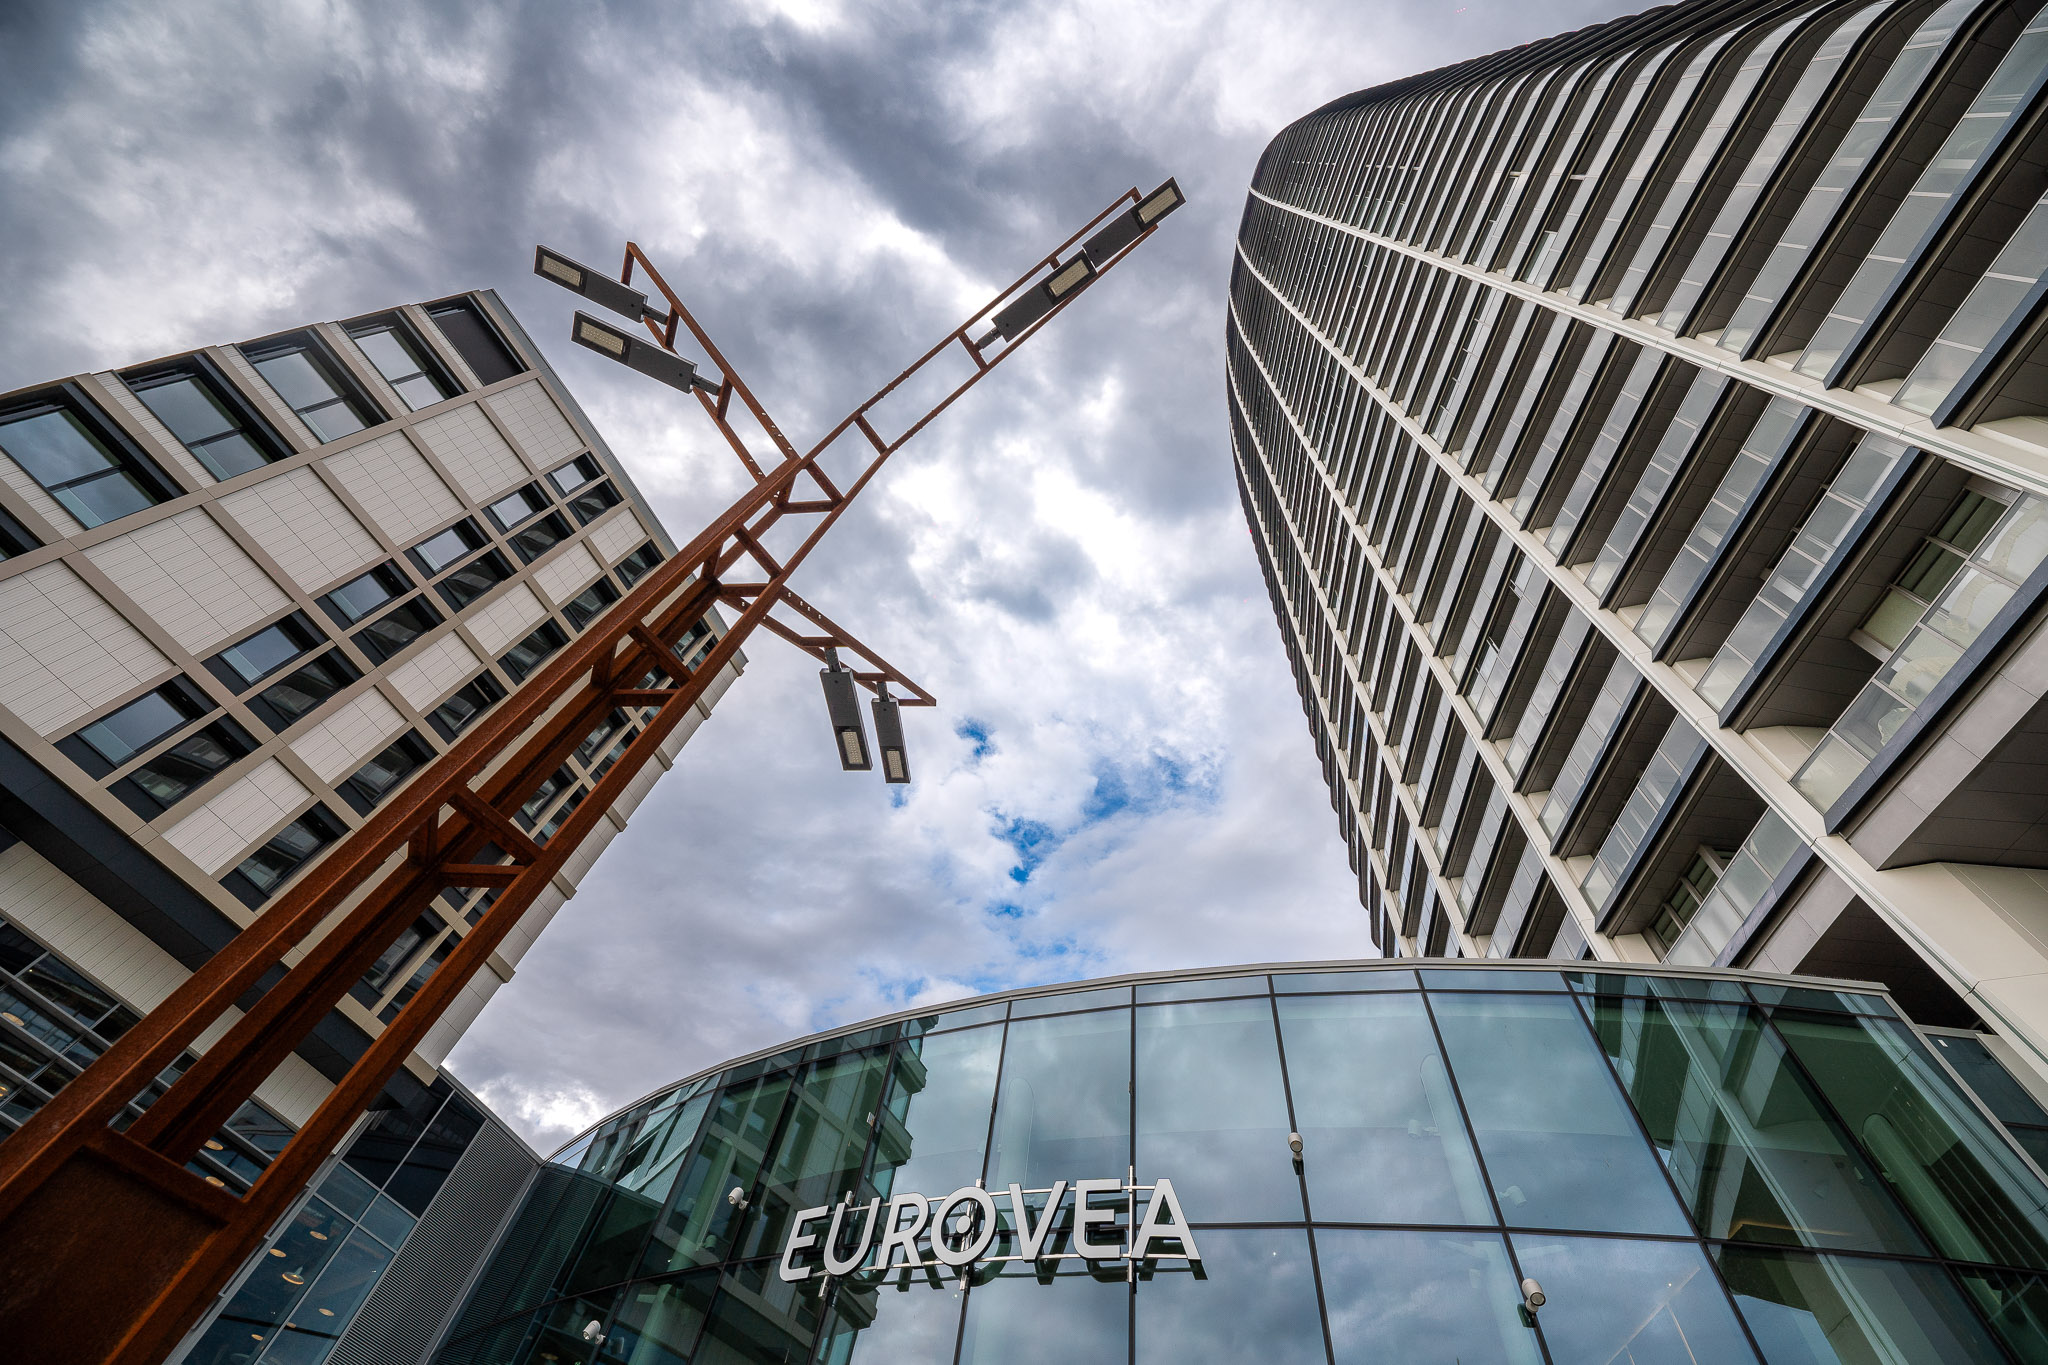 Eurovea Tower